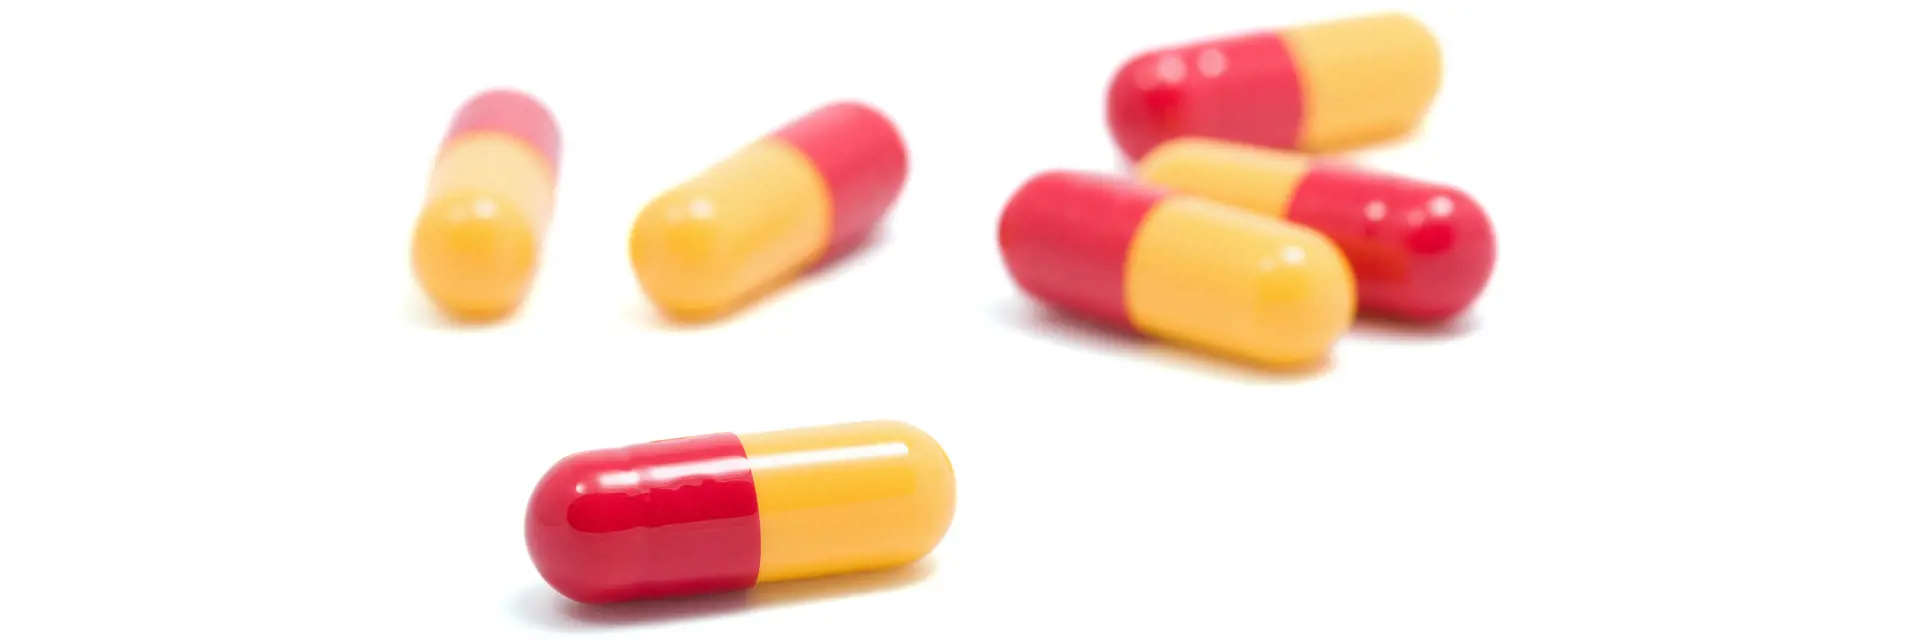 Sechs rot-gelbe Kapseln (Medikamente) auf weißem Hintergrund